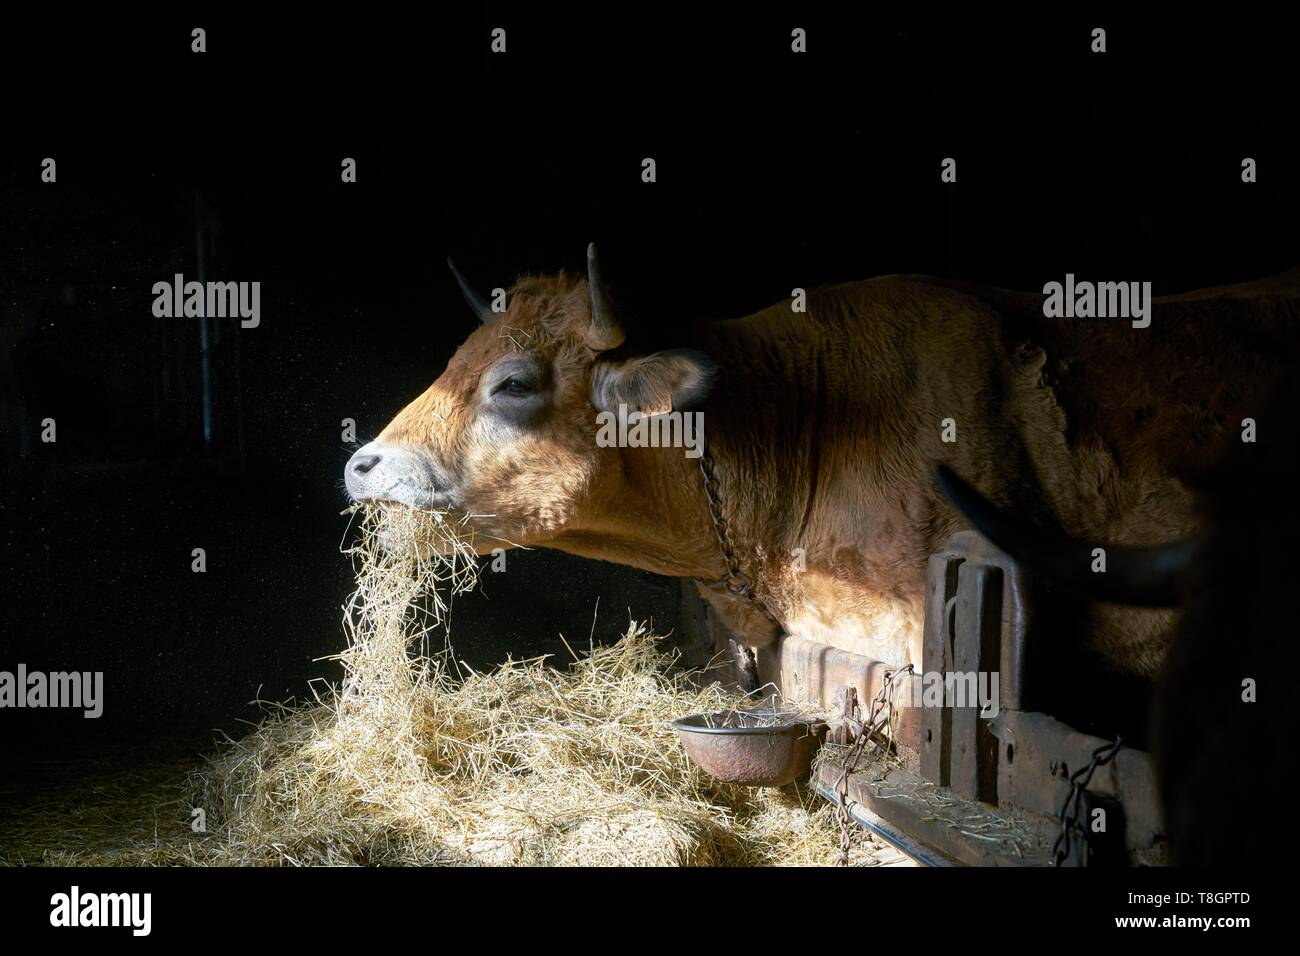 France, Aveyron, Laguiole, Celine Batut, breeder of the Aubrac cow Stock Photo